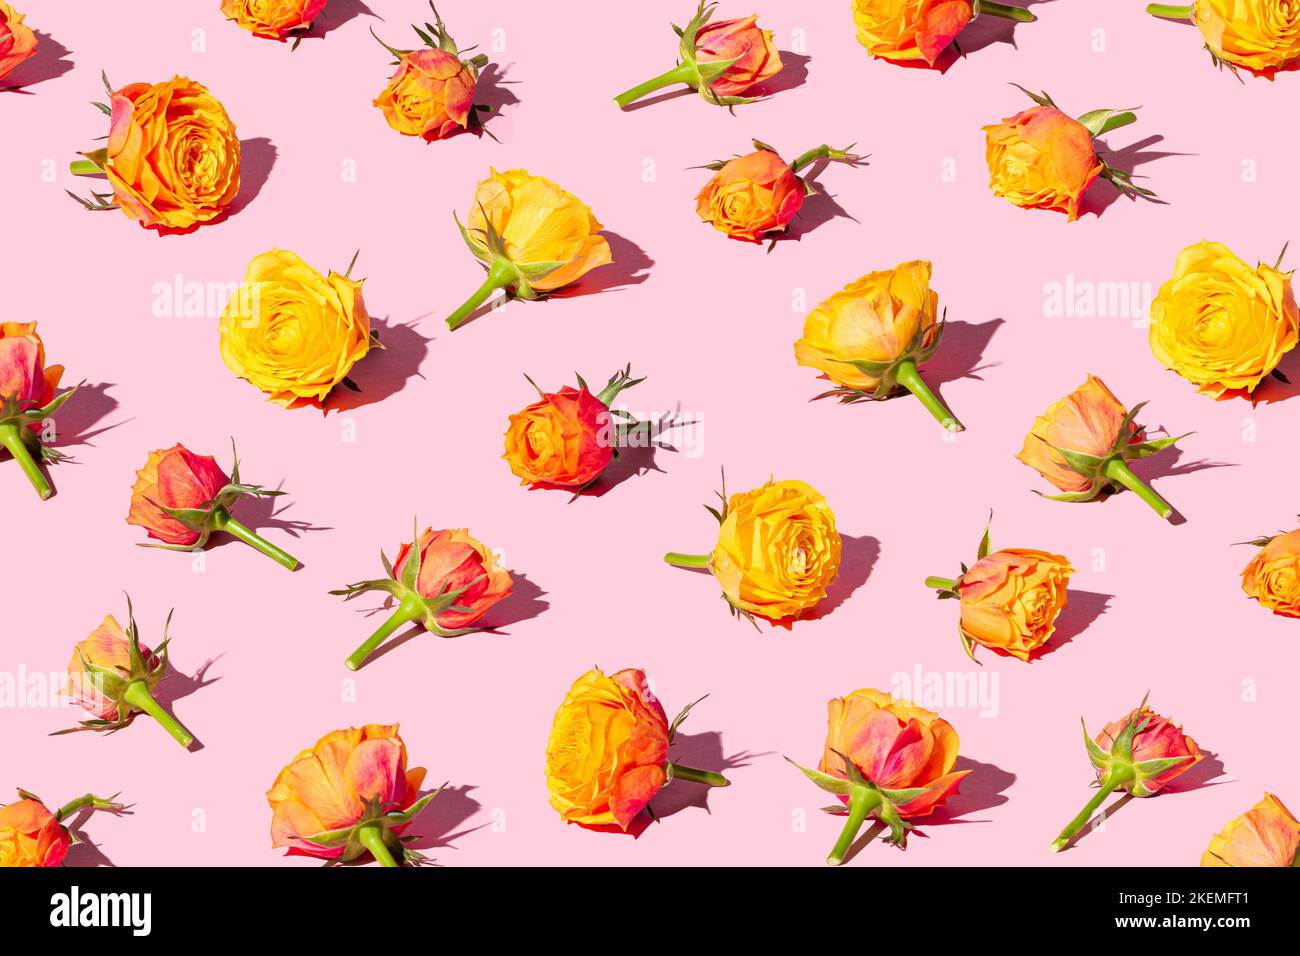 Schöne rote und gelbe Rosen in einem Muster auf einem pastellrosa Hintergrund angeordnet. Valentinstag-Konzept-Banner. Stockfoto